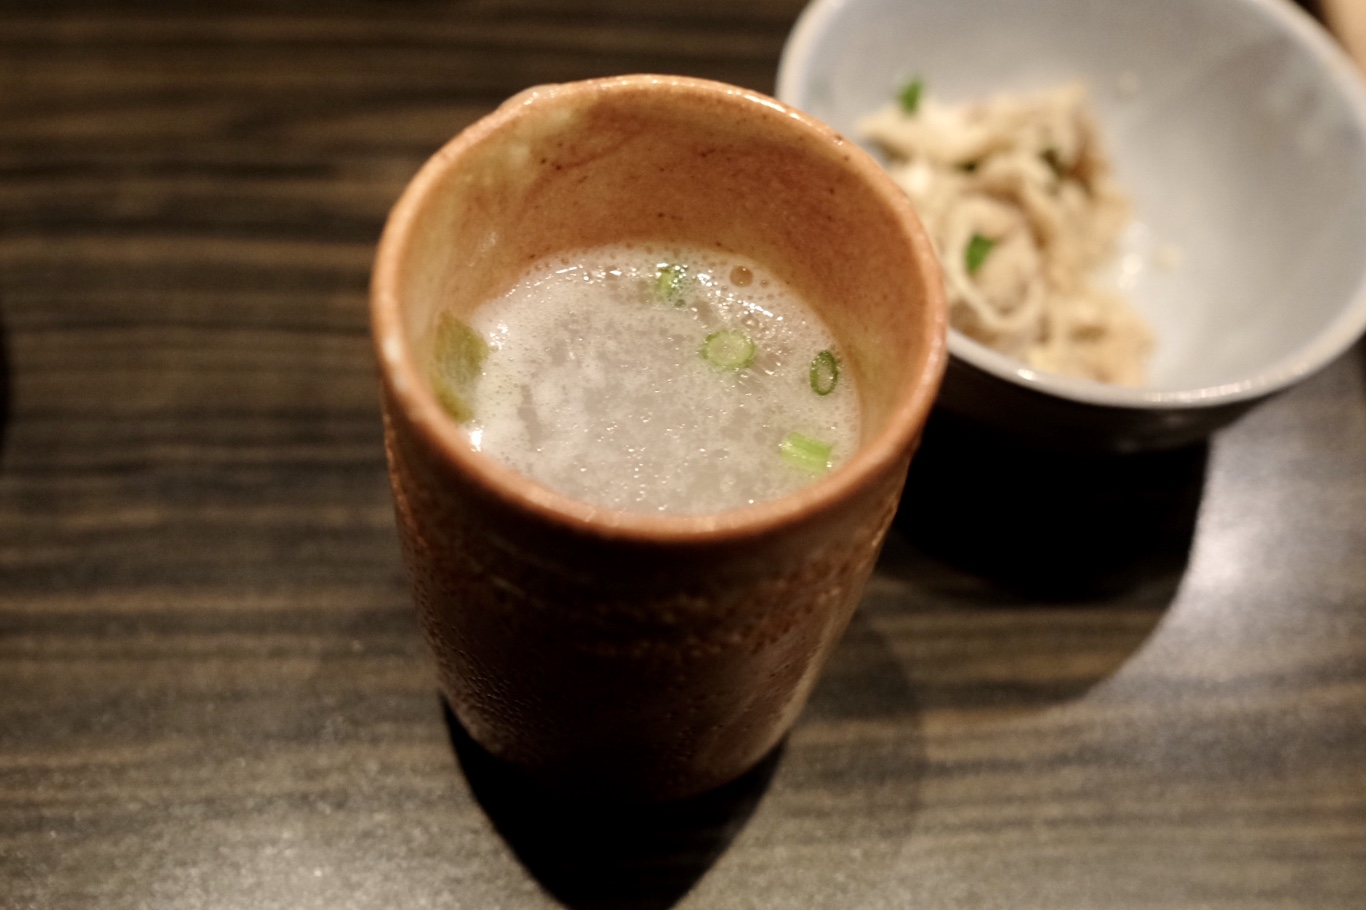 冬天没有什么比一锅鸡汤更暖的了！大阪这家专做鸡汤的料理店治愈你的冬天